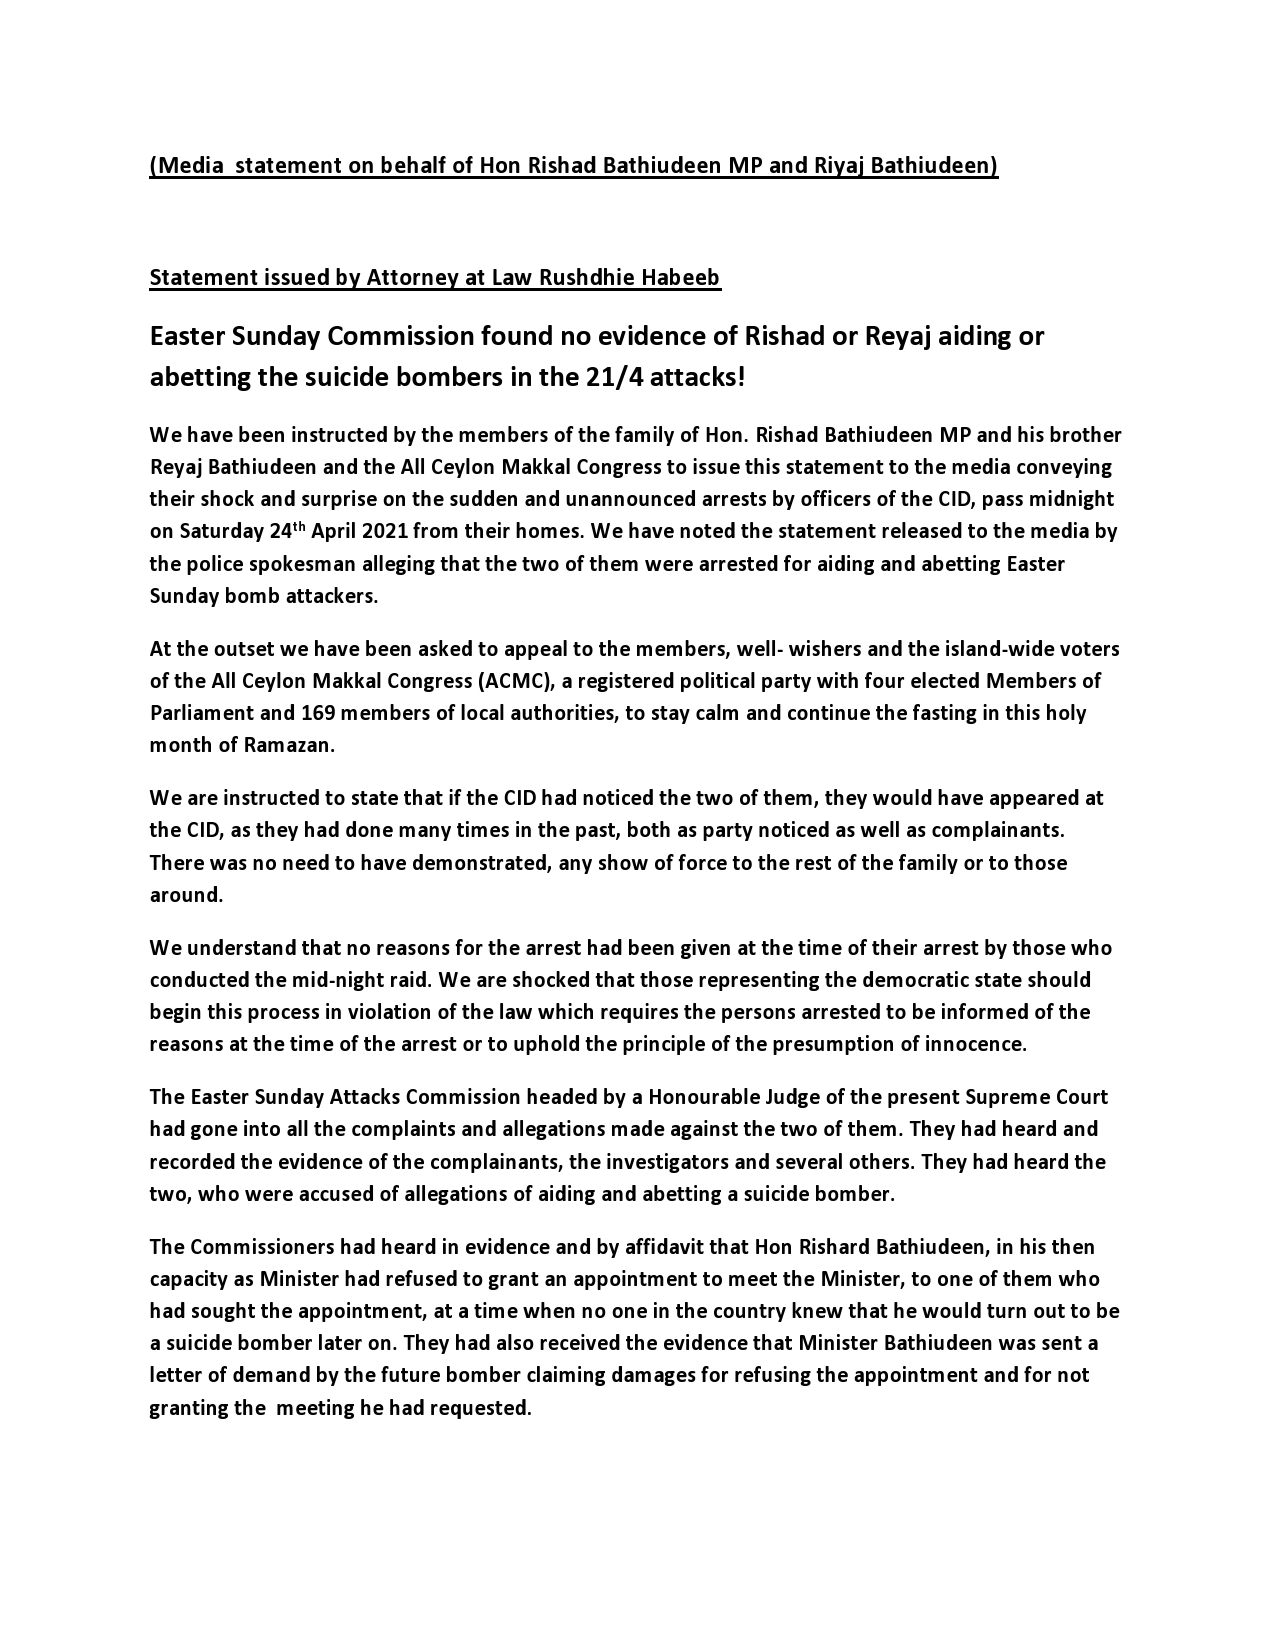 Media statement on behalf of Hon Rishard Bathiudeen MP and Riyaj Bathiudeen page0001